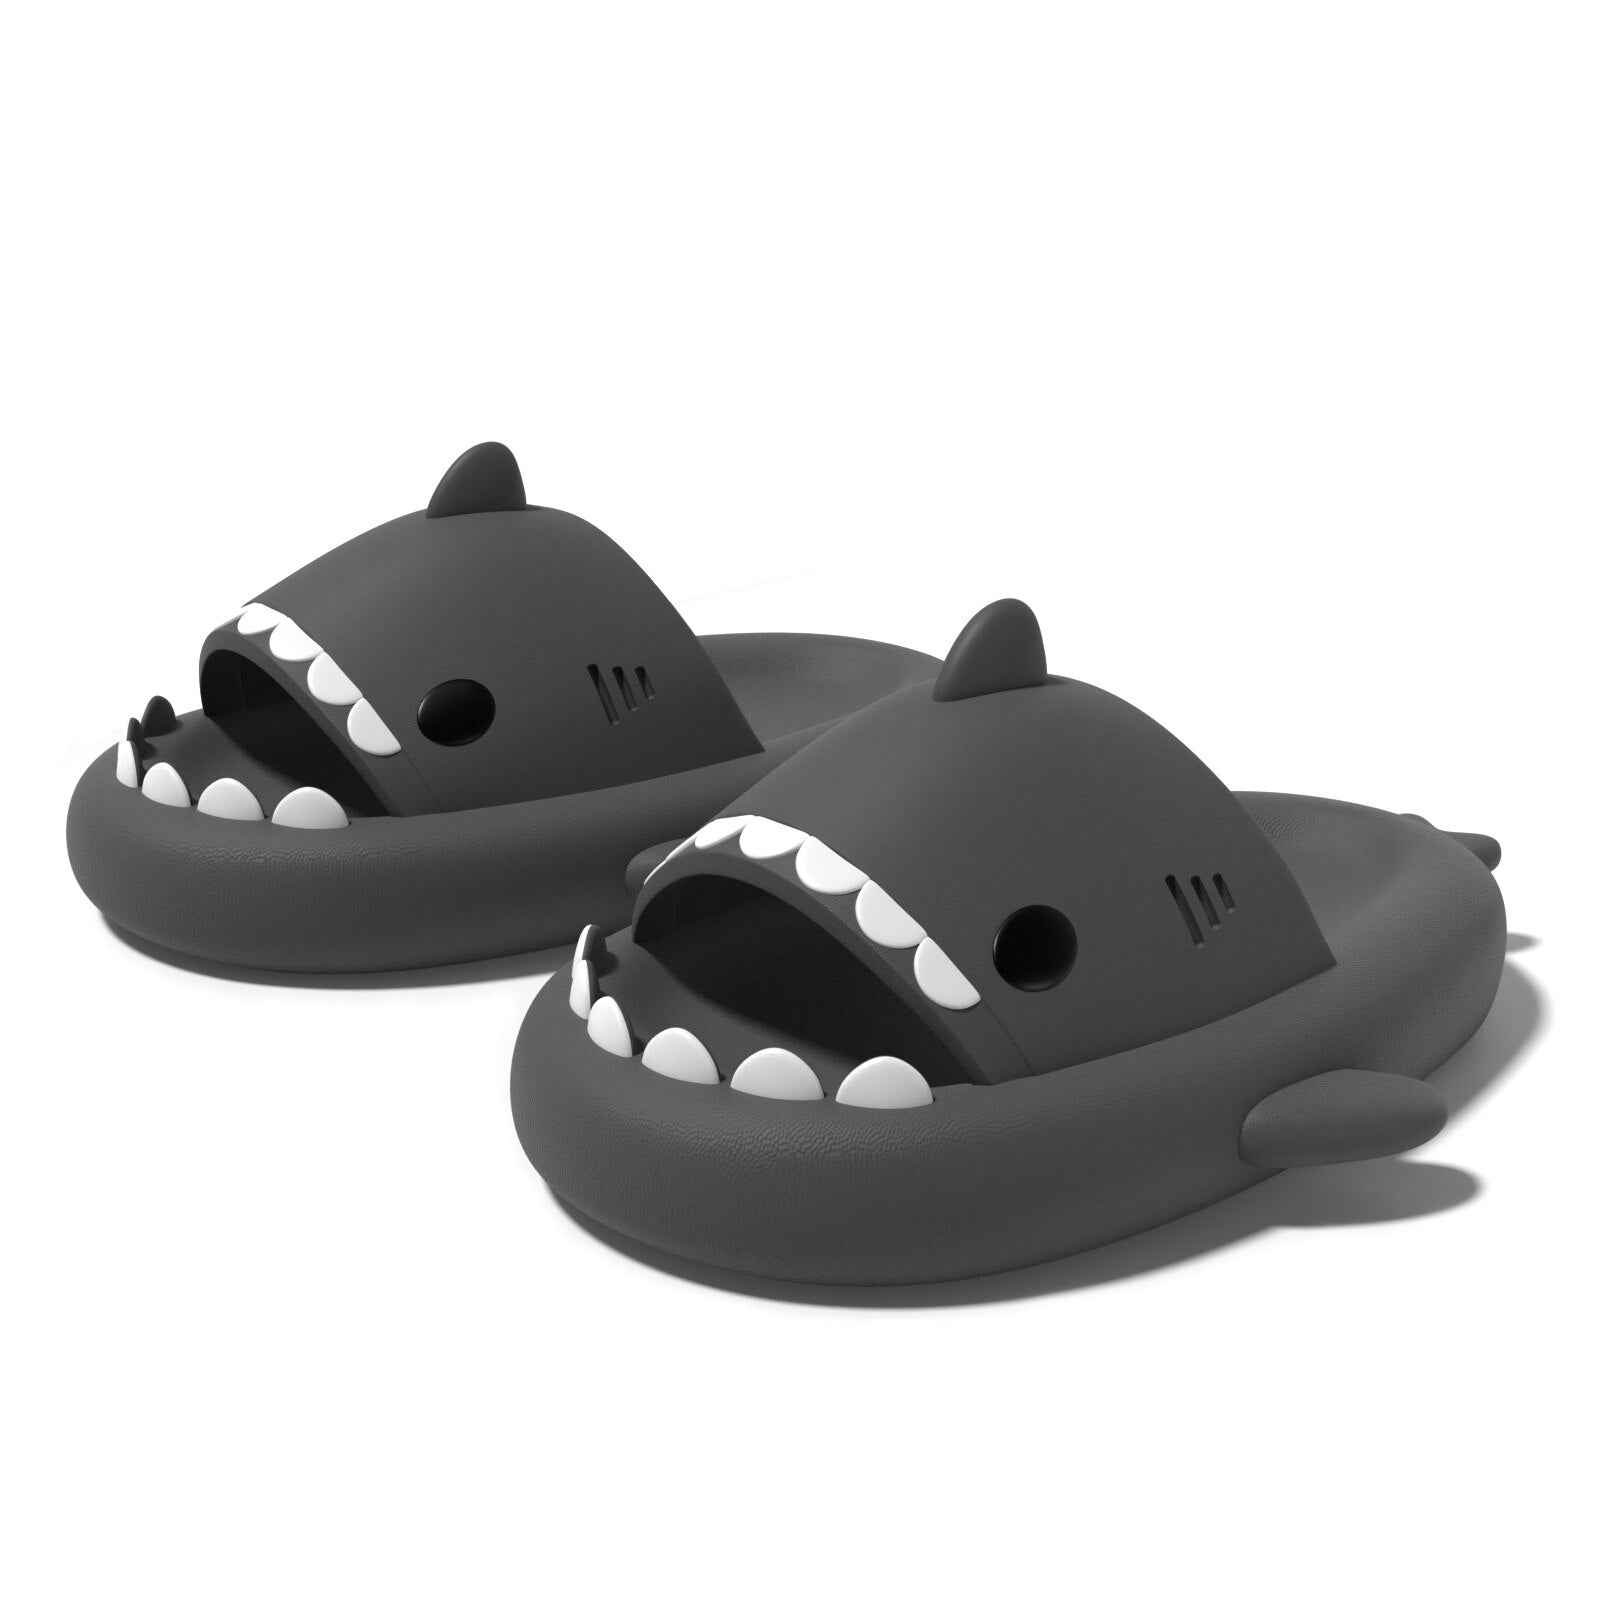 Die Haifisch Schuhe